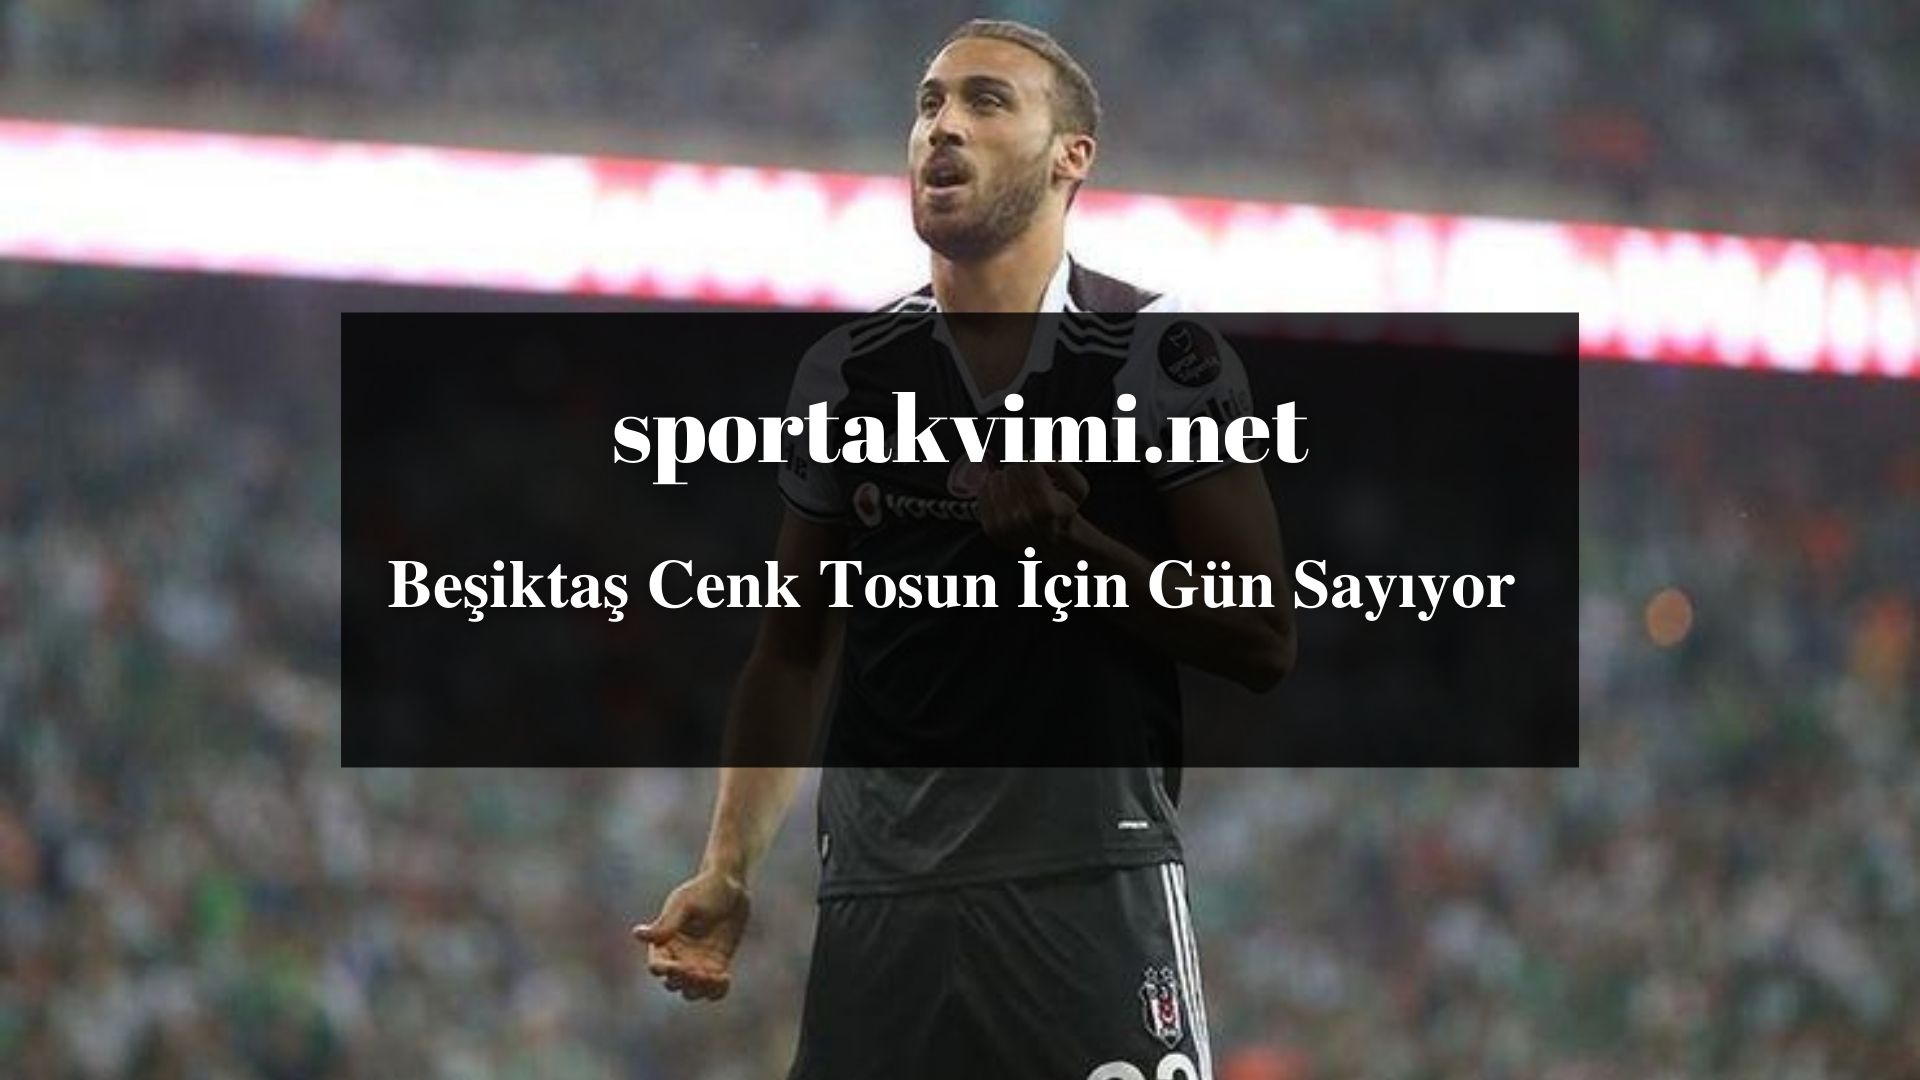 Beşiktaş Cenk Tosun İçin Gün Sayıyor